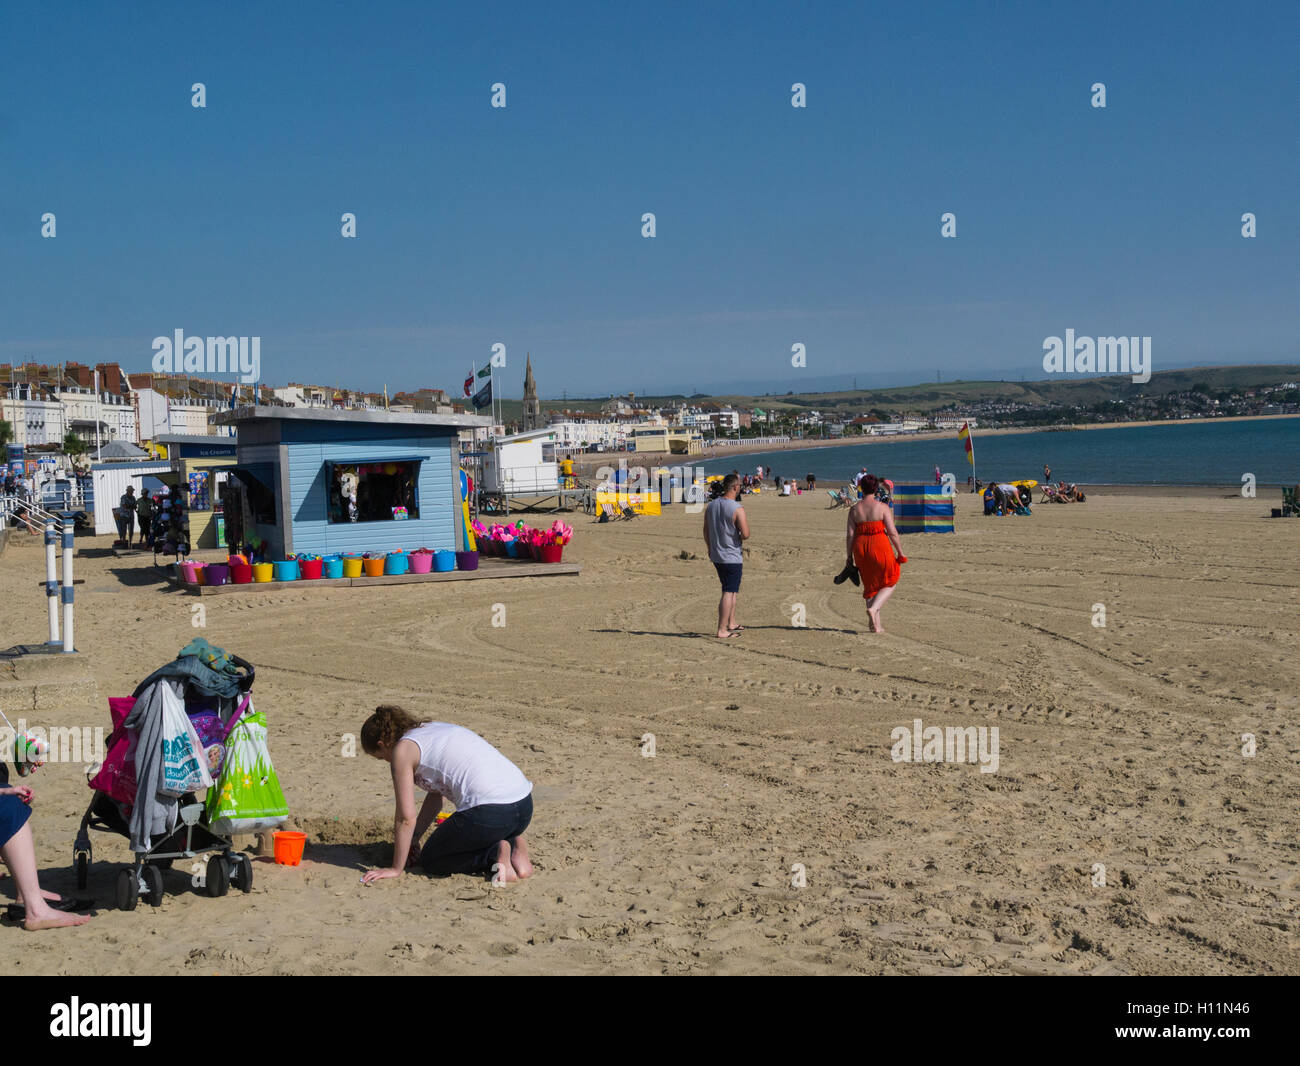 Haciendo que la mayoría de los visitantes de septiembre jornada gloriosa playa de arena dorada de Weymouth con una amplia bahía y coloridas casetas de playa Dorset, Inglaterra Foto de stock